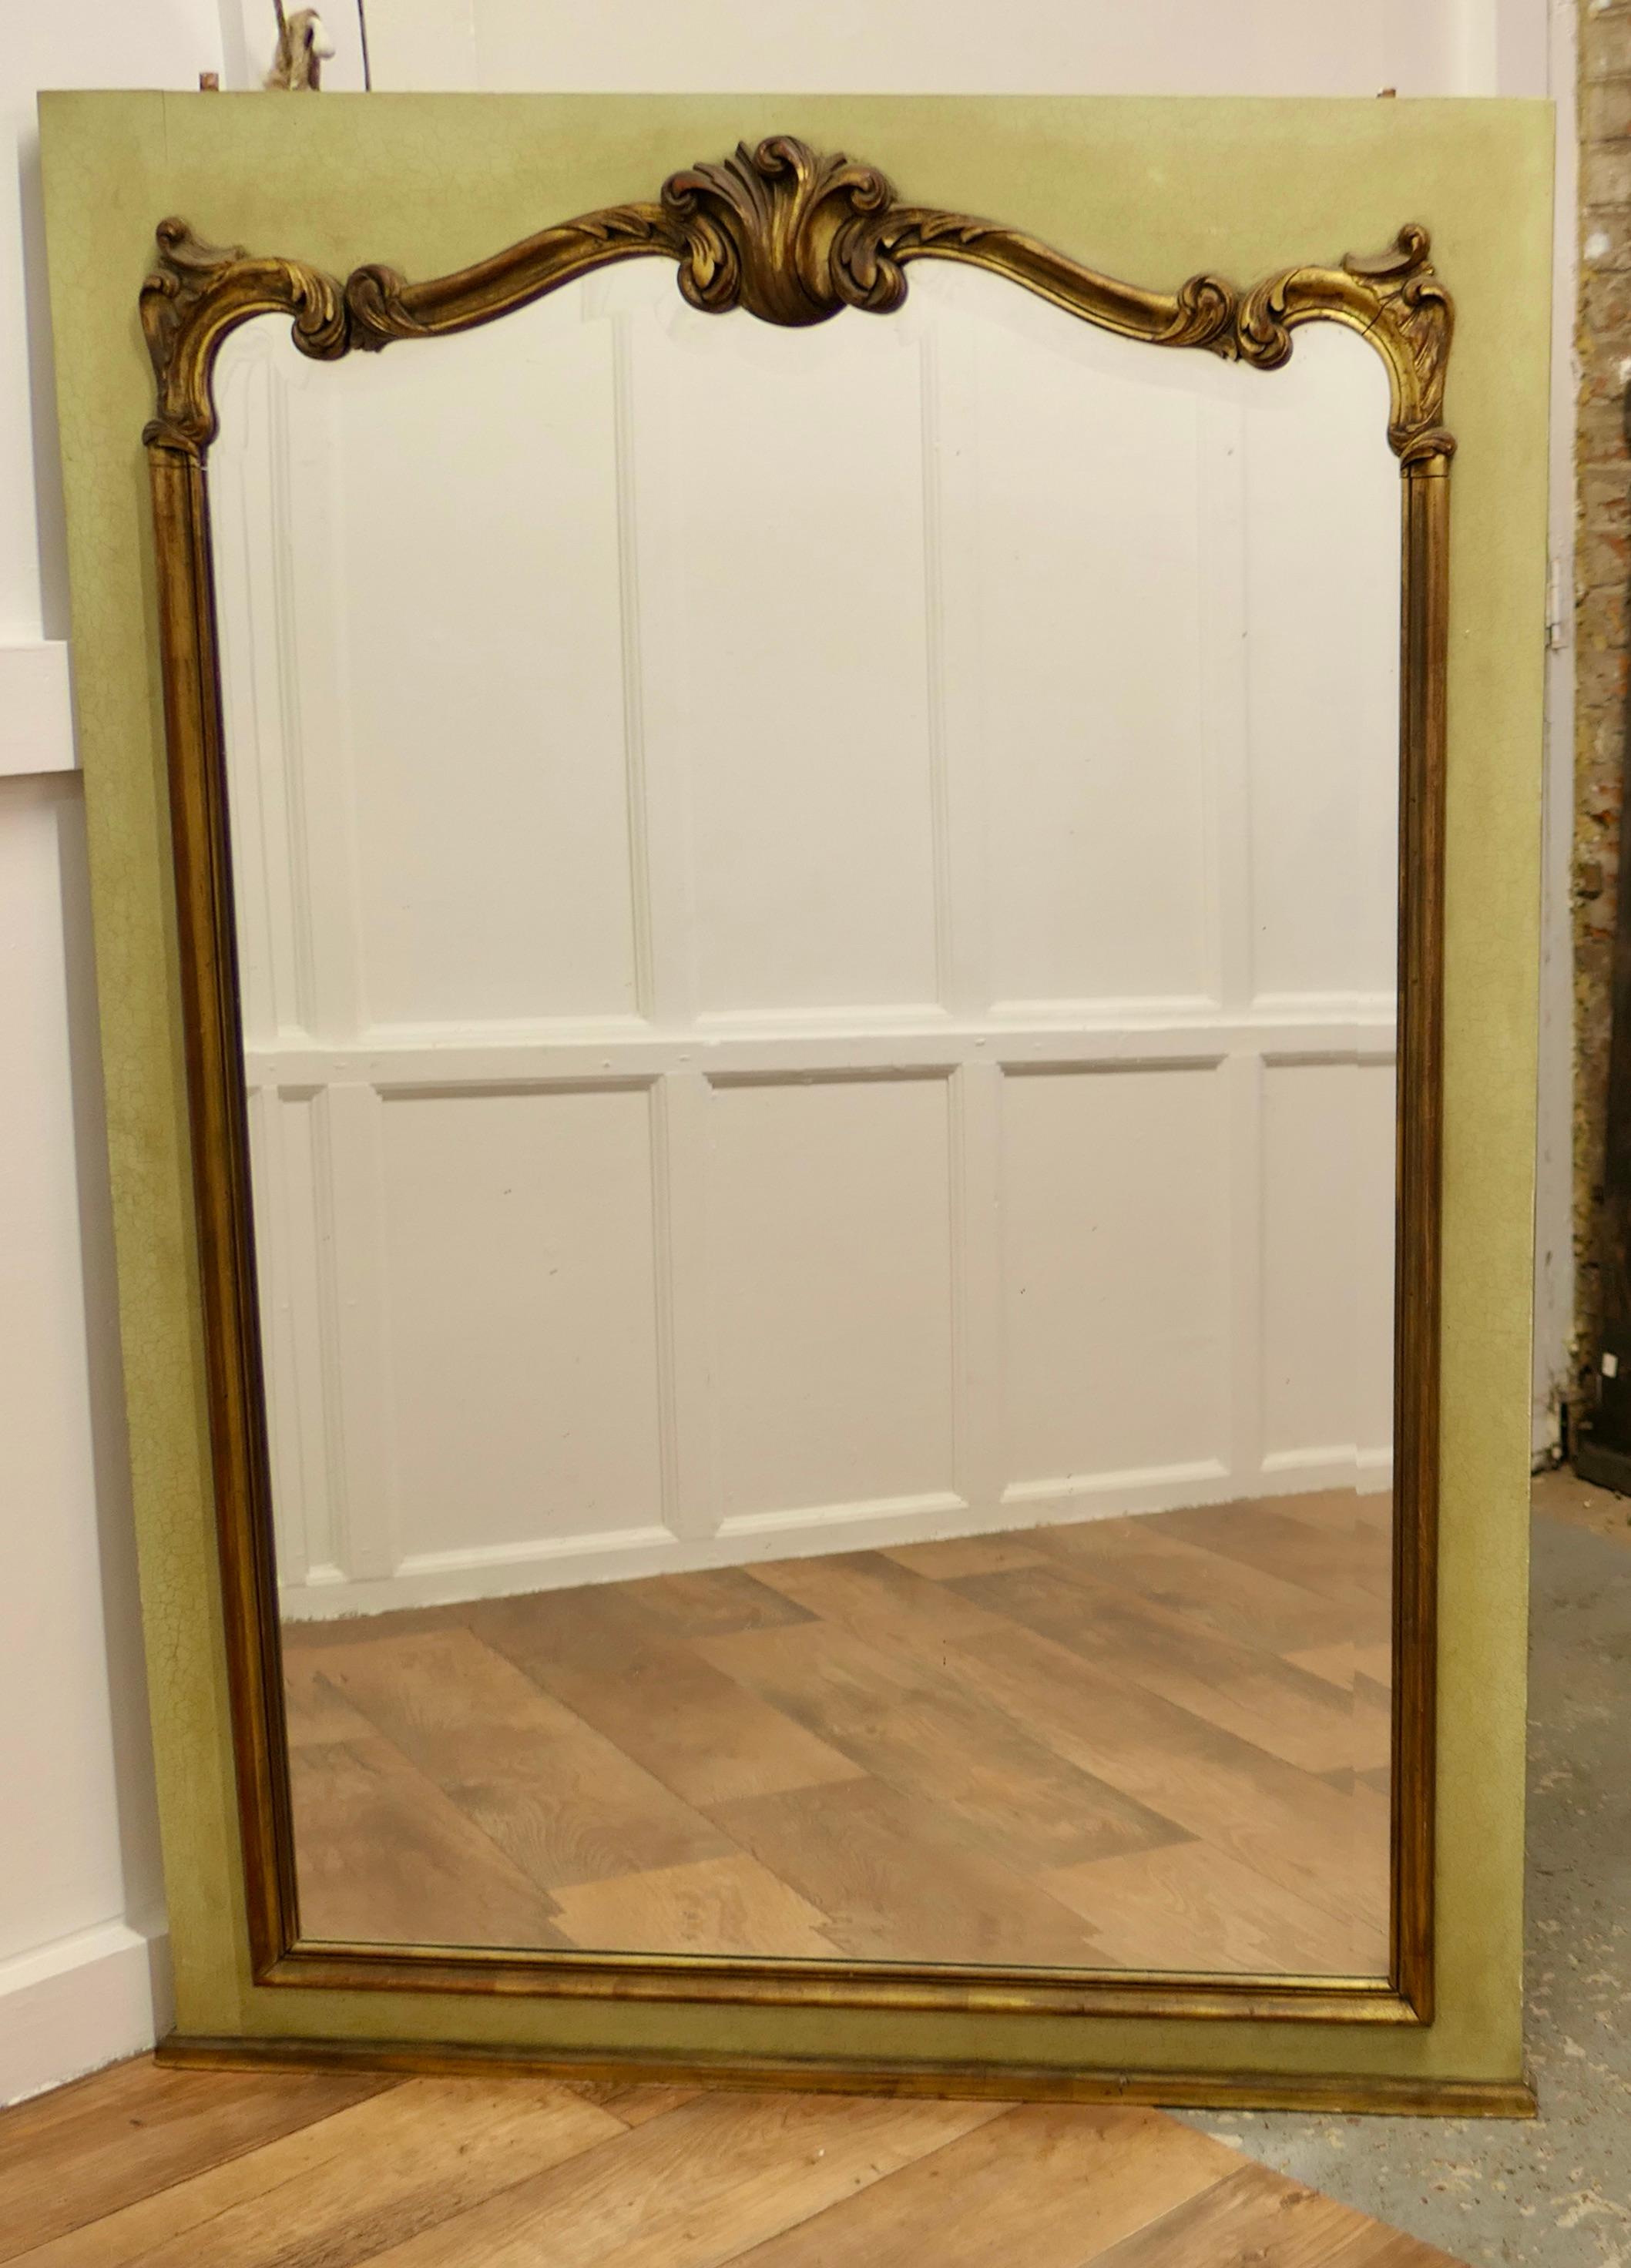 Vergoldet und Crackle Paint Spiegel montiert Wandplatte 

Dieses französische Stück wurde aus einem getäfelten Zimmer des 19. Jahrhunderts gerettet.
Das Paneel ist mit einem dekorativen vergoldeten Rahmen auf einer hellgrün/gelben Craquelé-Bemalung